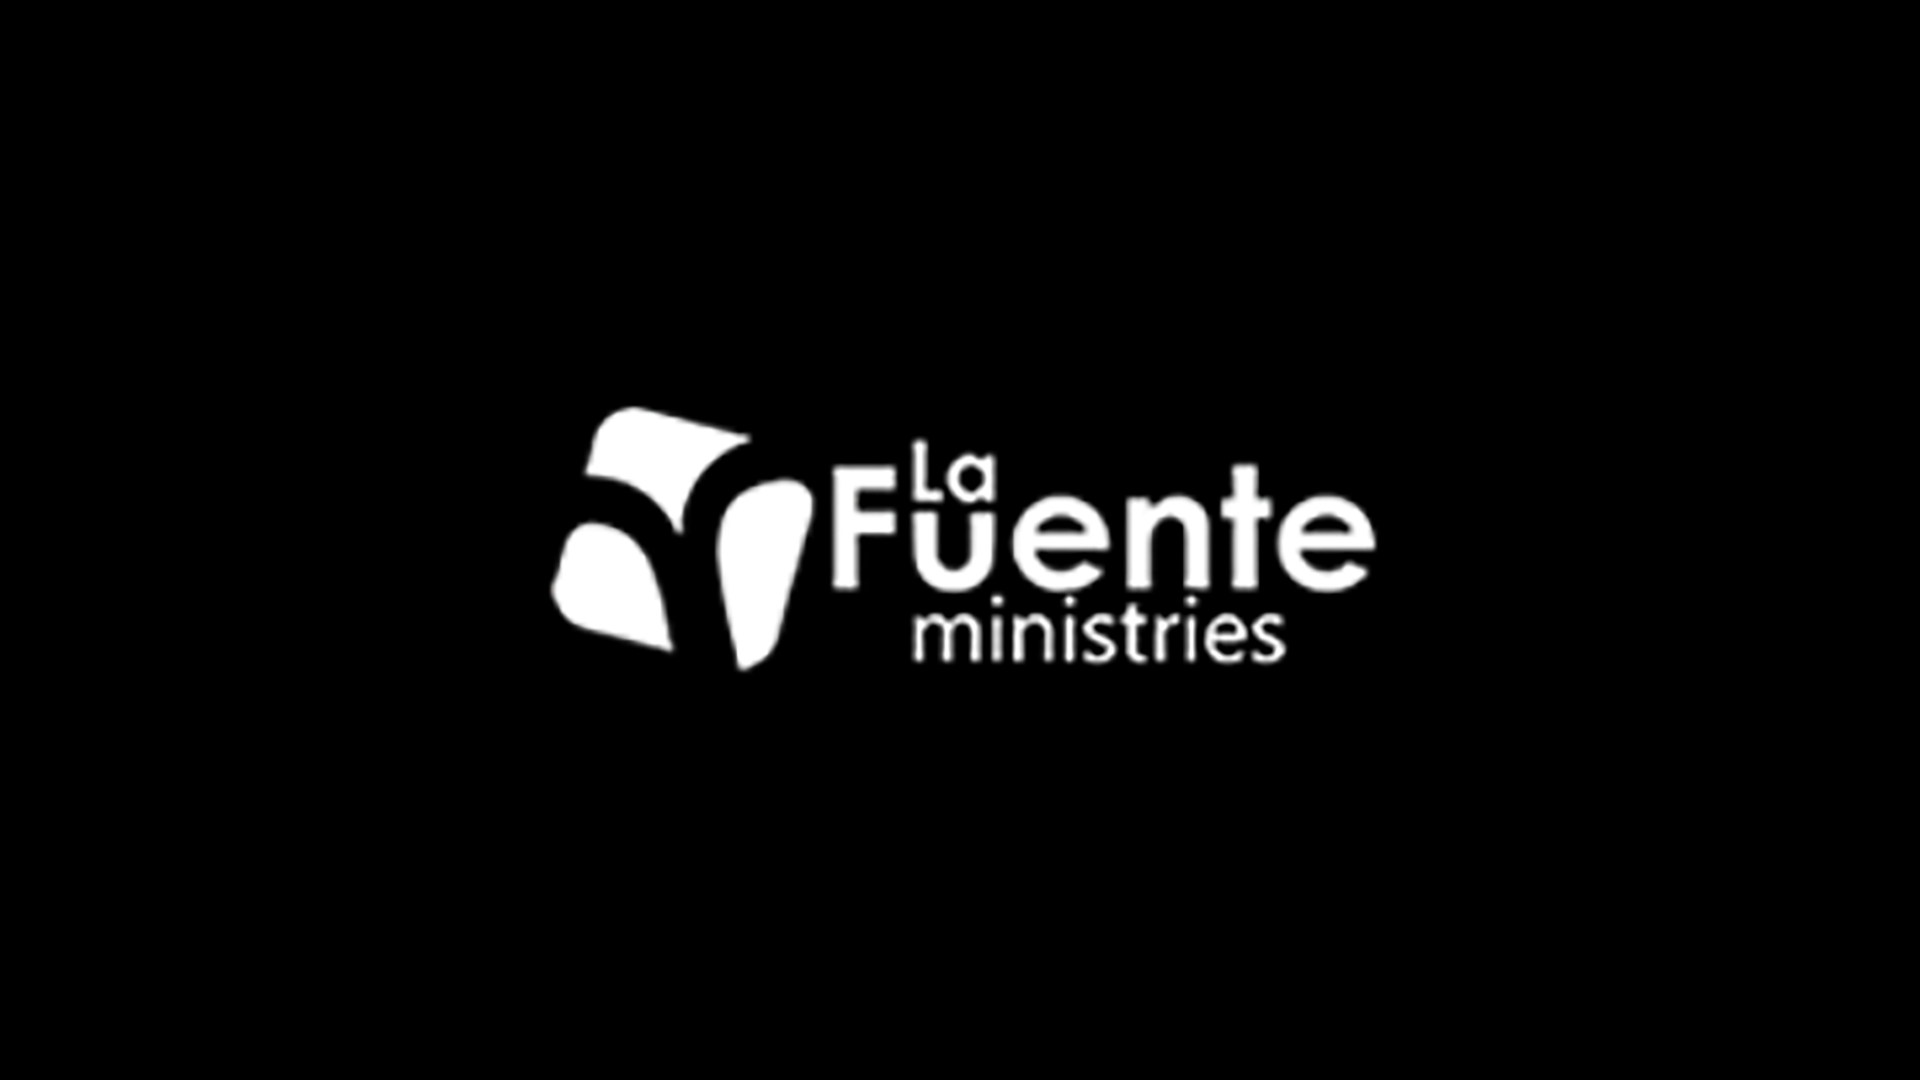 La Fuente - Mexico logo